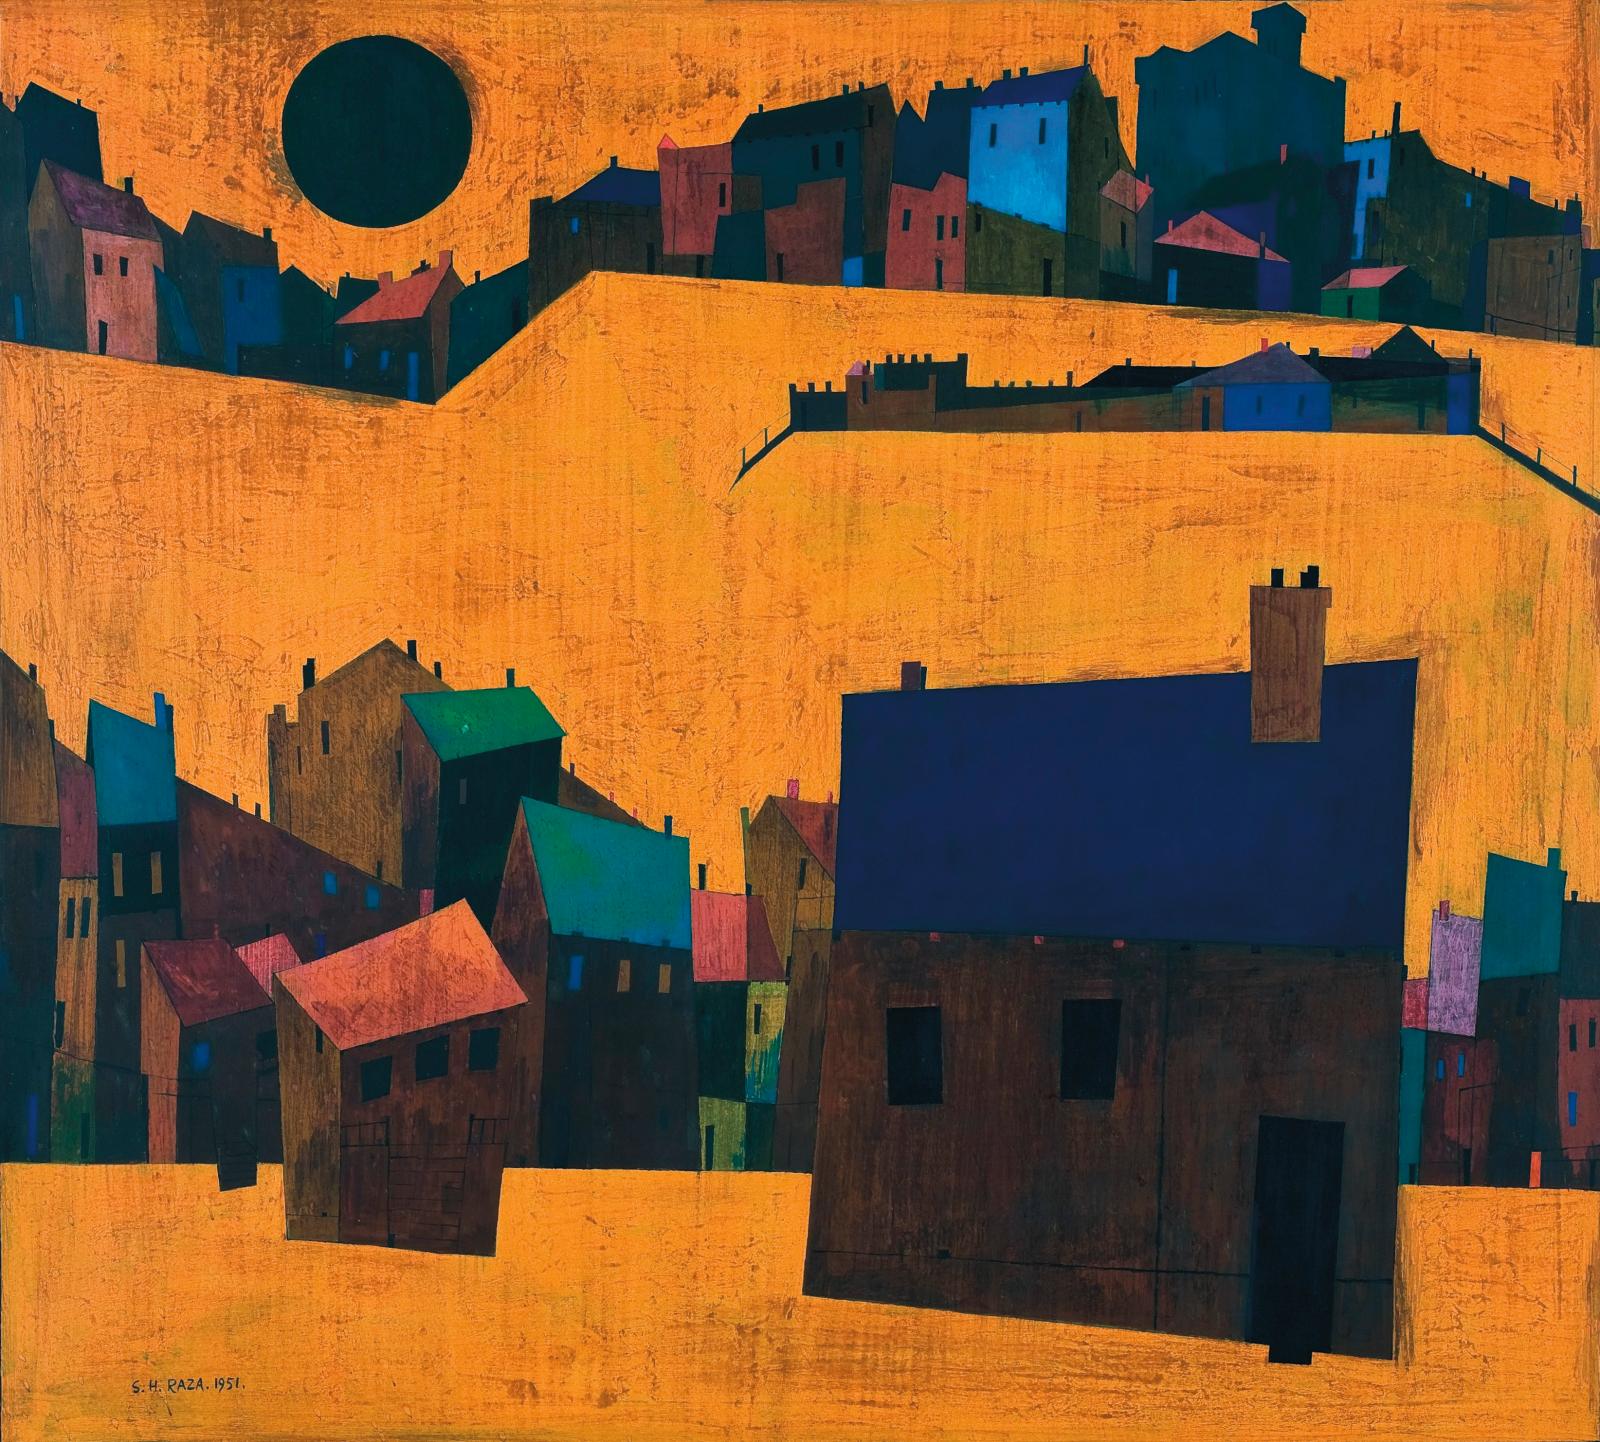 Le peintre indien Sayed Haider Raza honoré par le Centre Pompidou